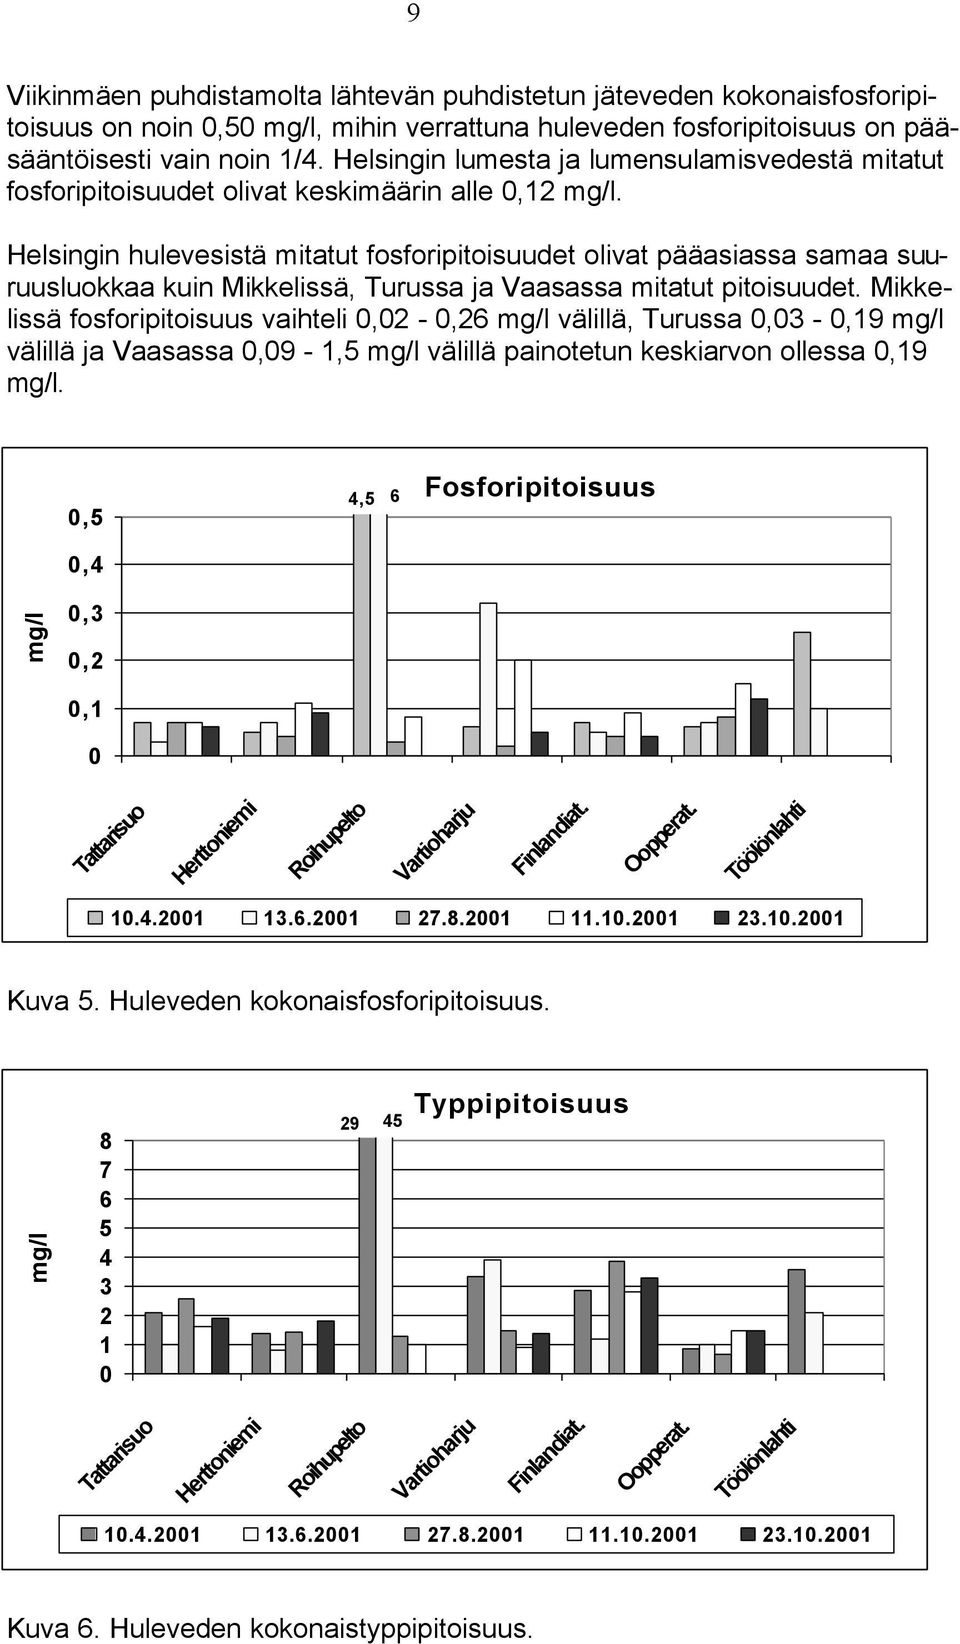 Helsingin hulevesistä mitatut fosforipitoisuudet olivat pääasiassa samaa suuruusluokkaa kuin Mikkelissä, Turussa ja Vaasassa mitatut pitoisuudet.